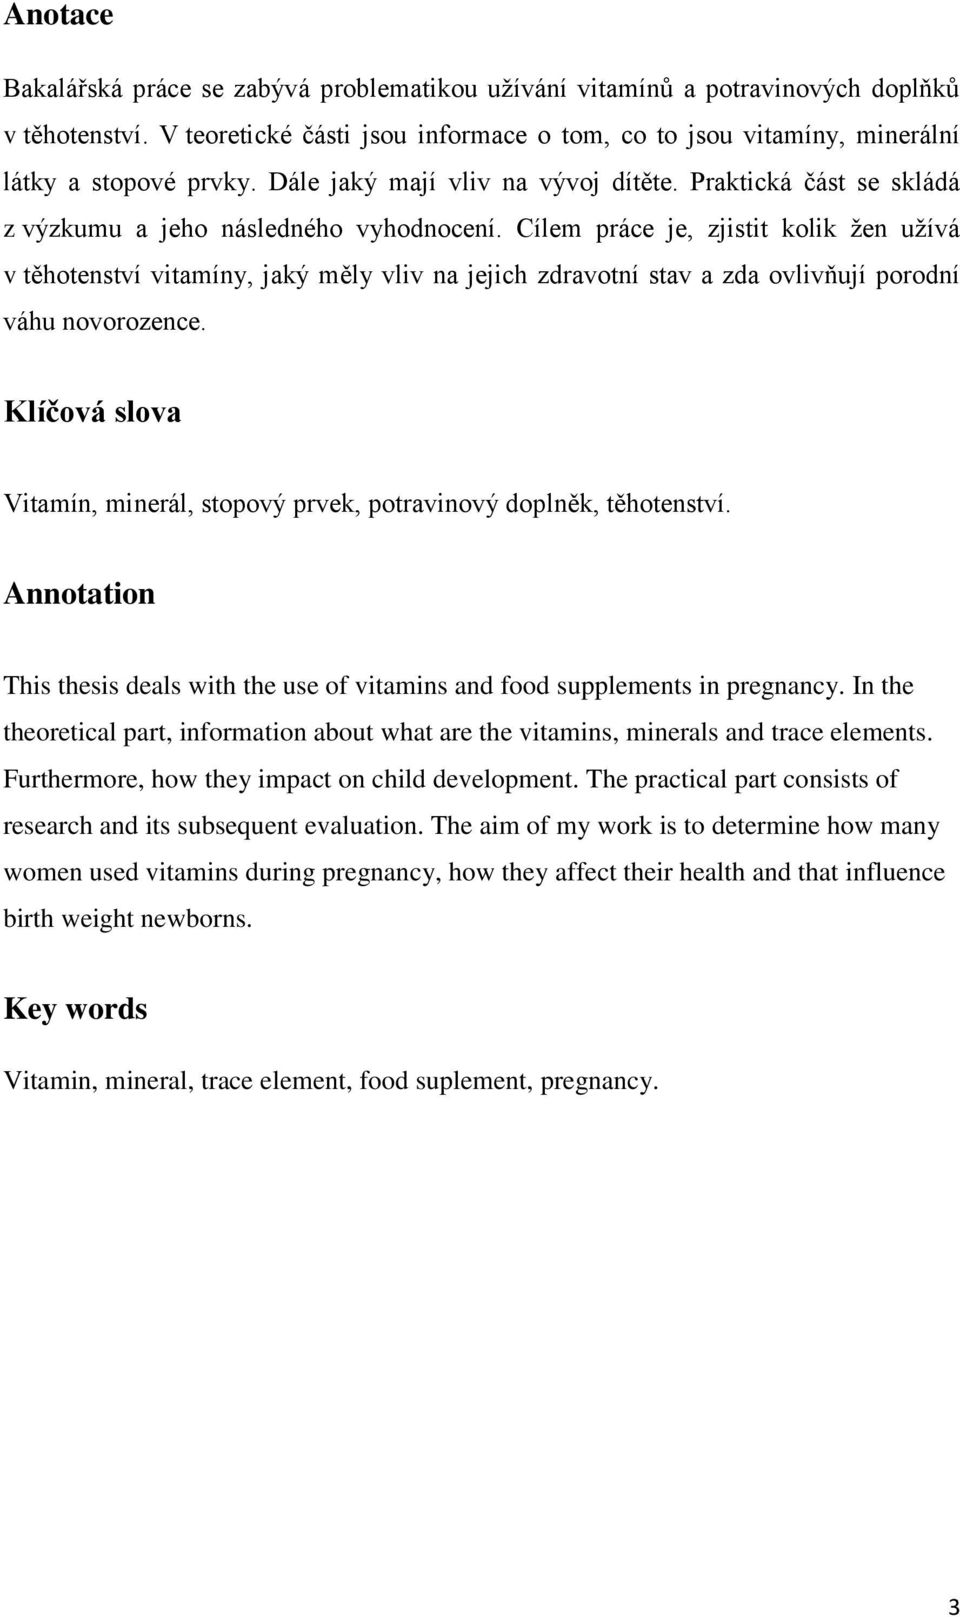 Cílem práce je, zjistit kolik ţen uţívá v těhotenství vitamíny, jaký měly vliv na jejich zdravotní stav a zda ovlivňují porodní váhu novorozence.